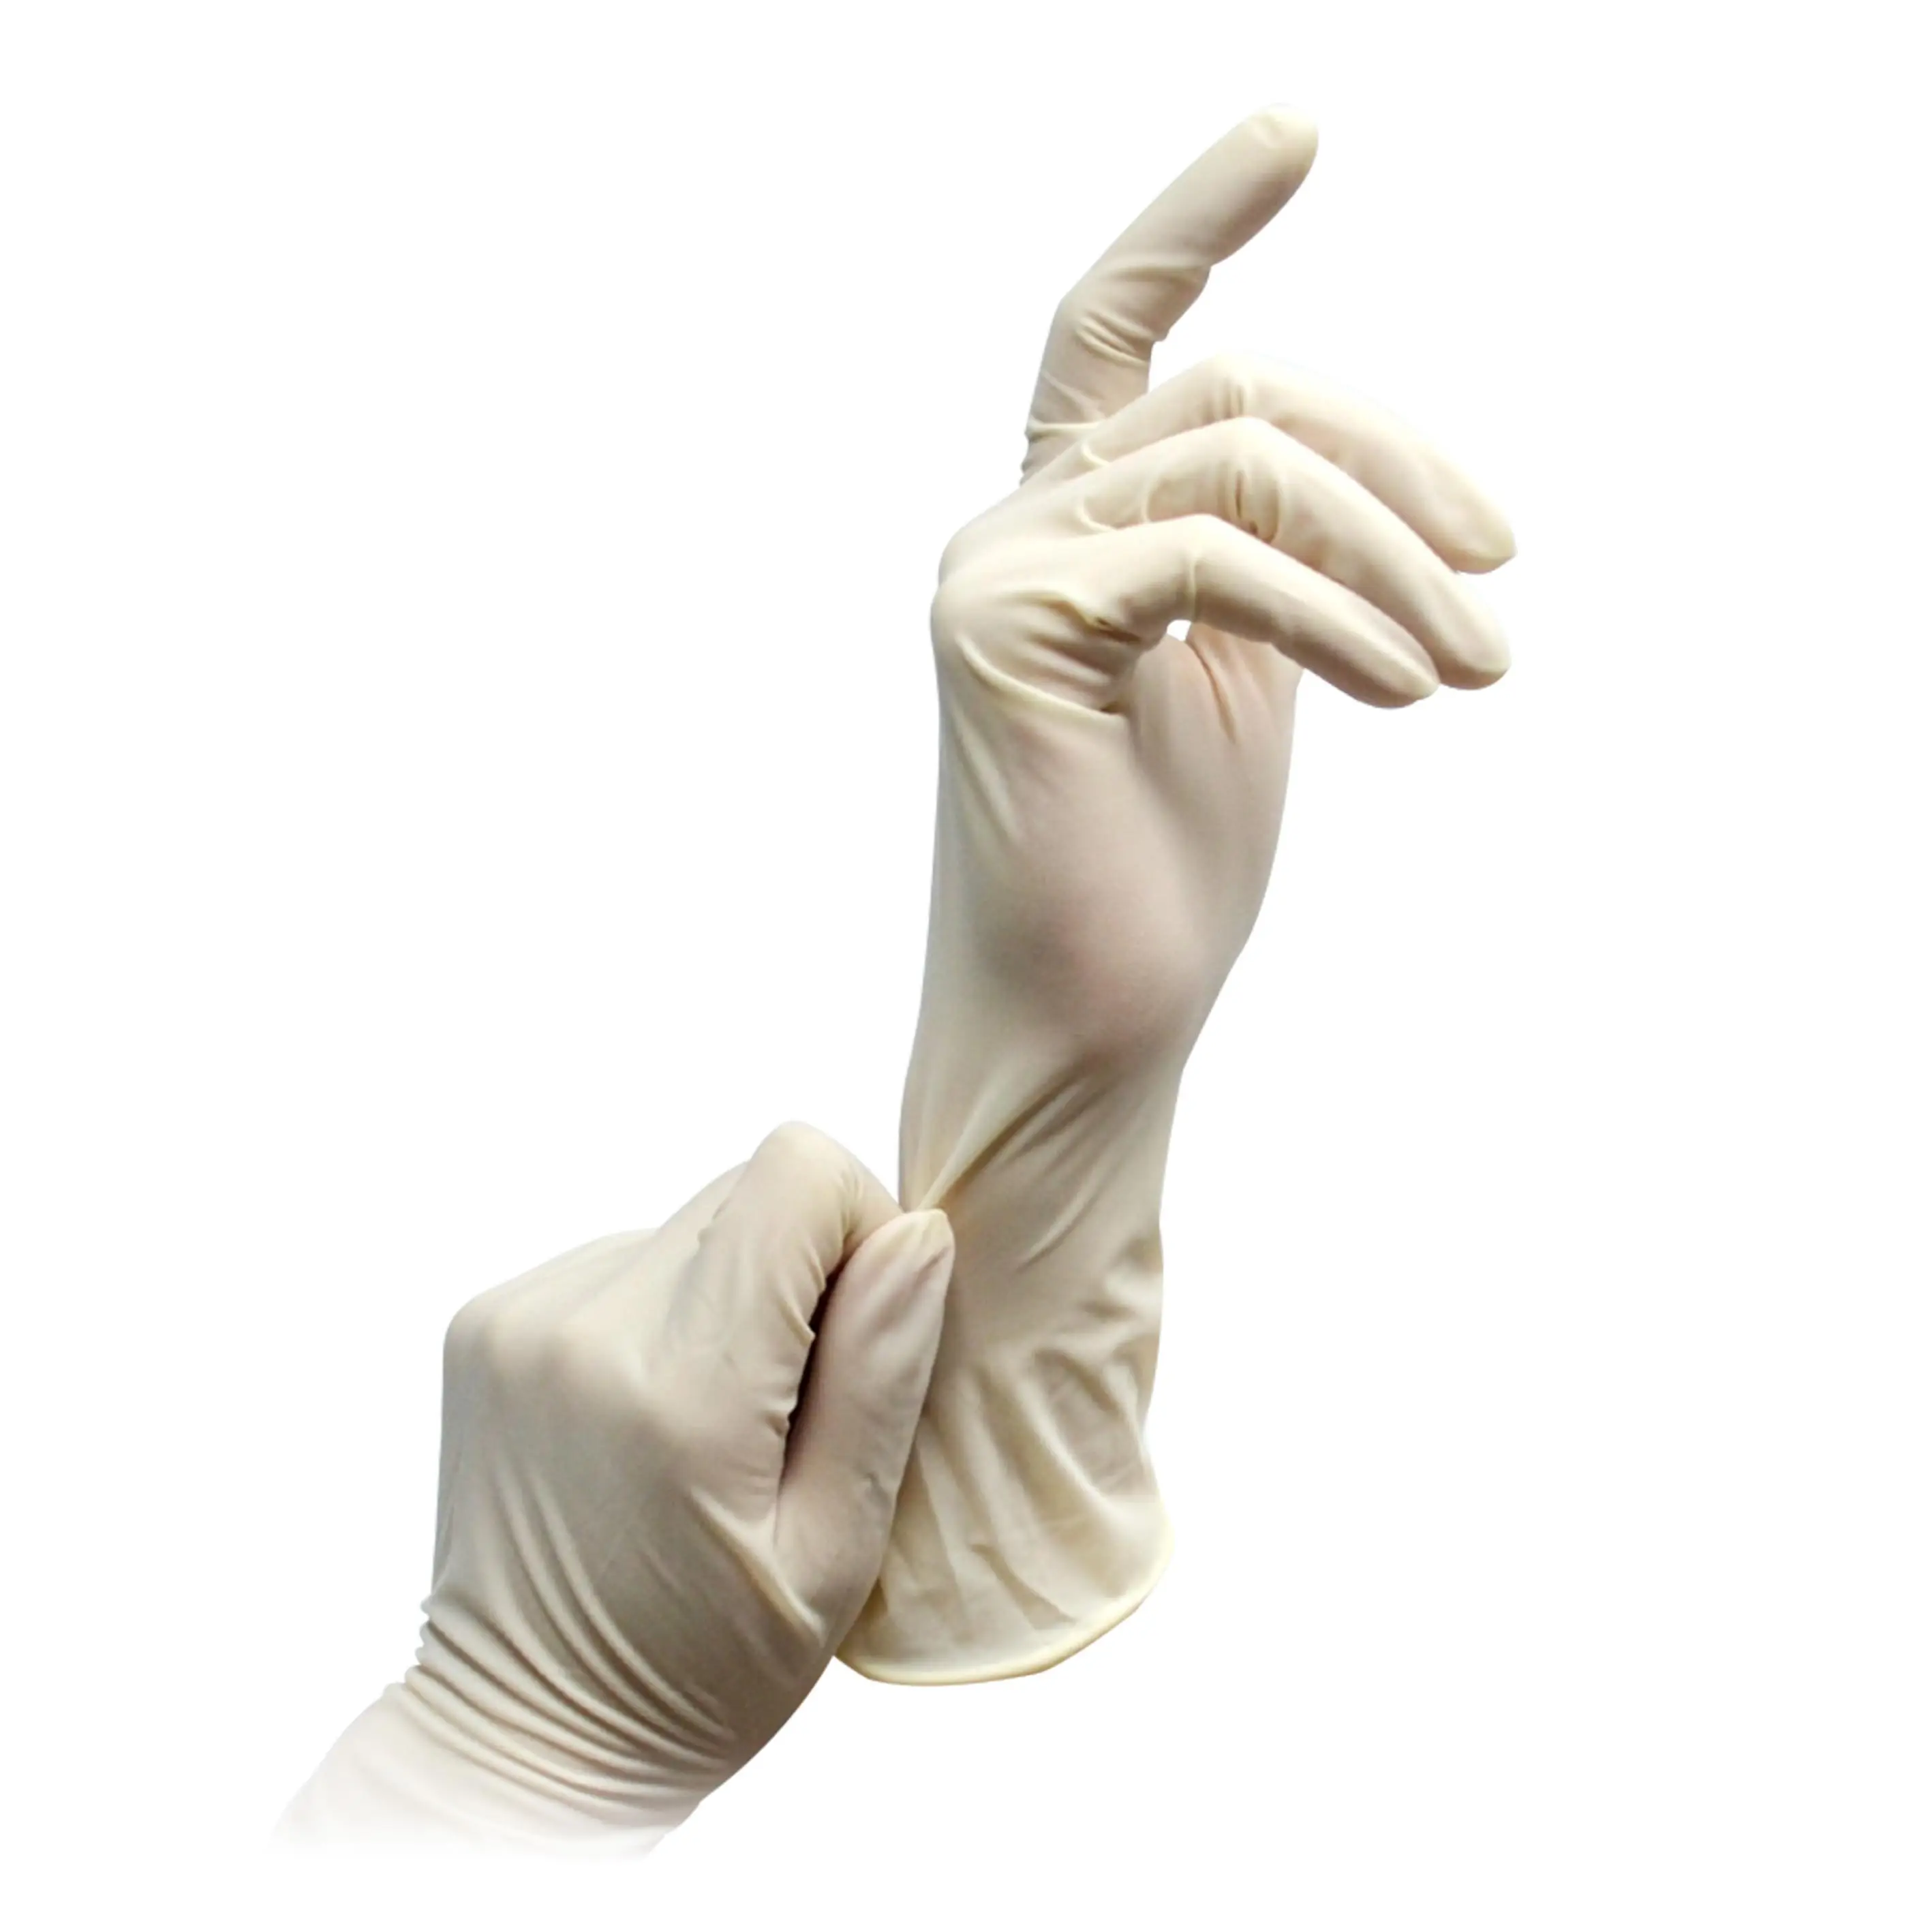 Guantes quirúrgicos en polvo, guantes quirúrgicos de látex estériles del fabricante de Malasia para uso médico